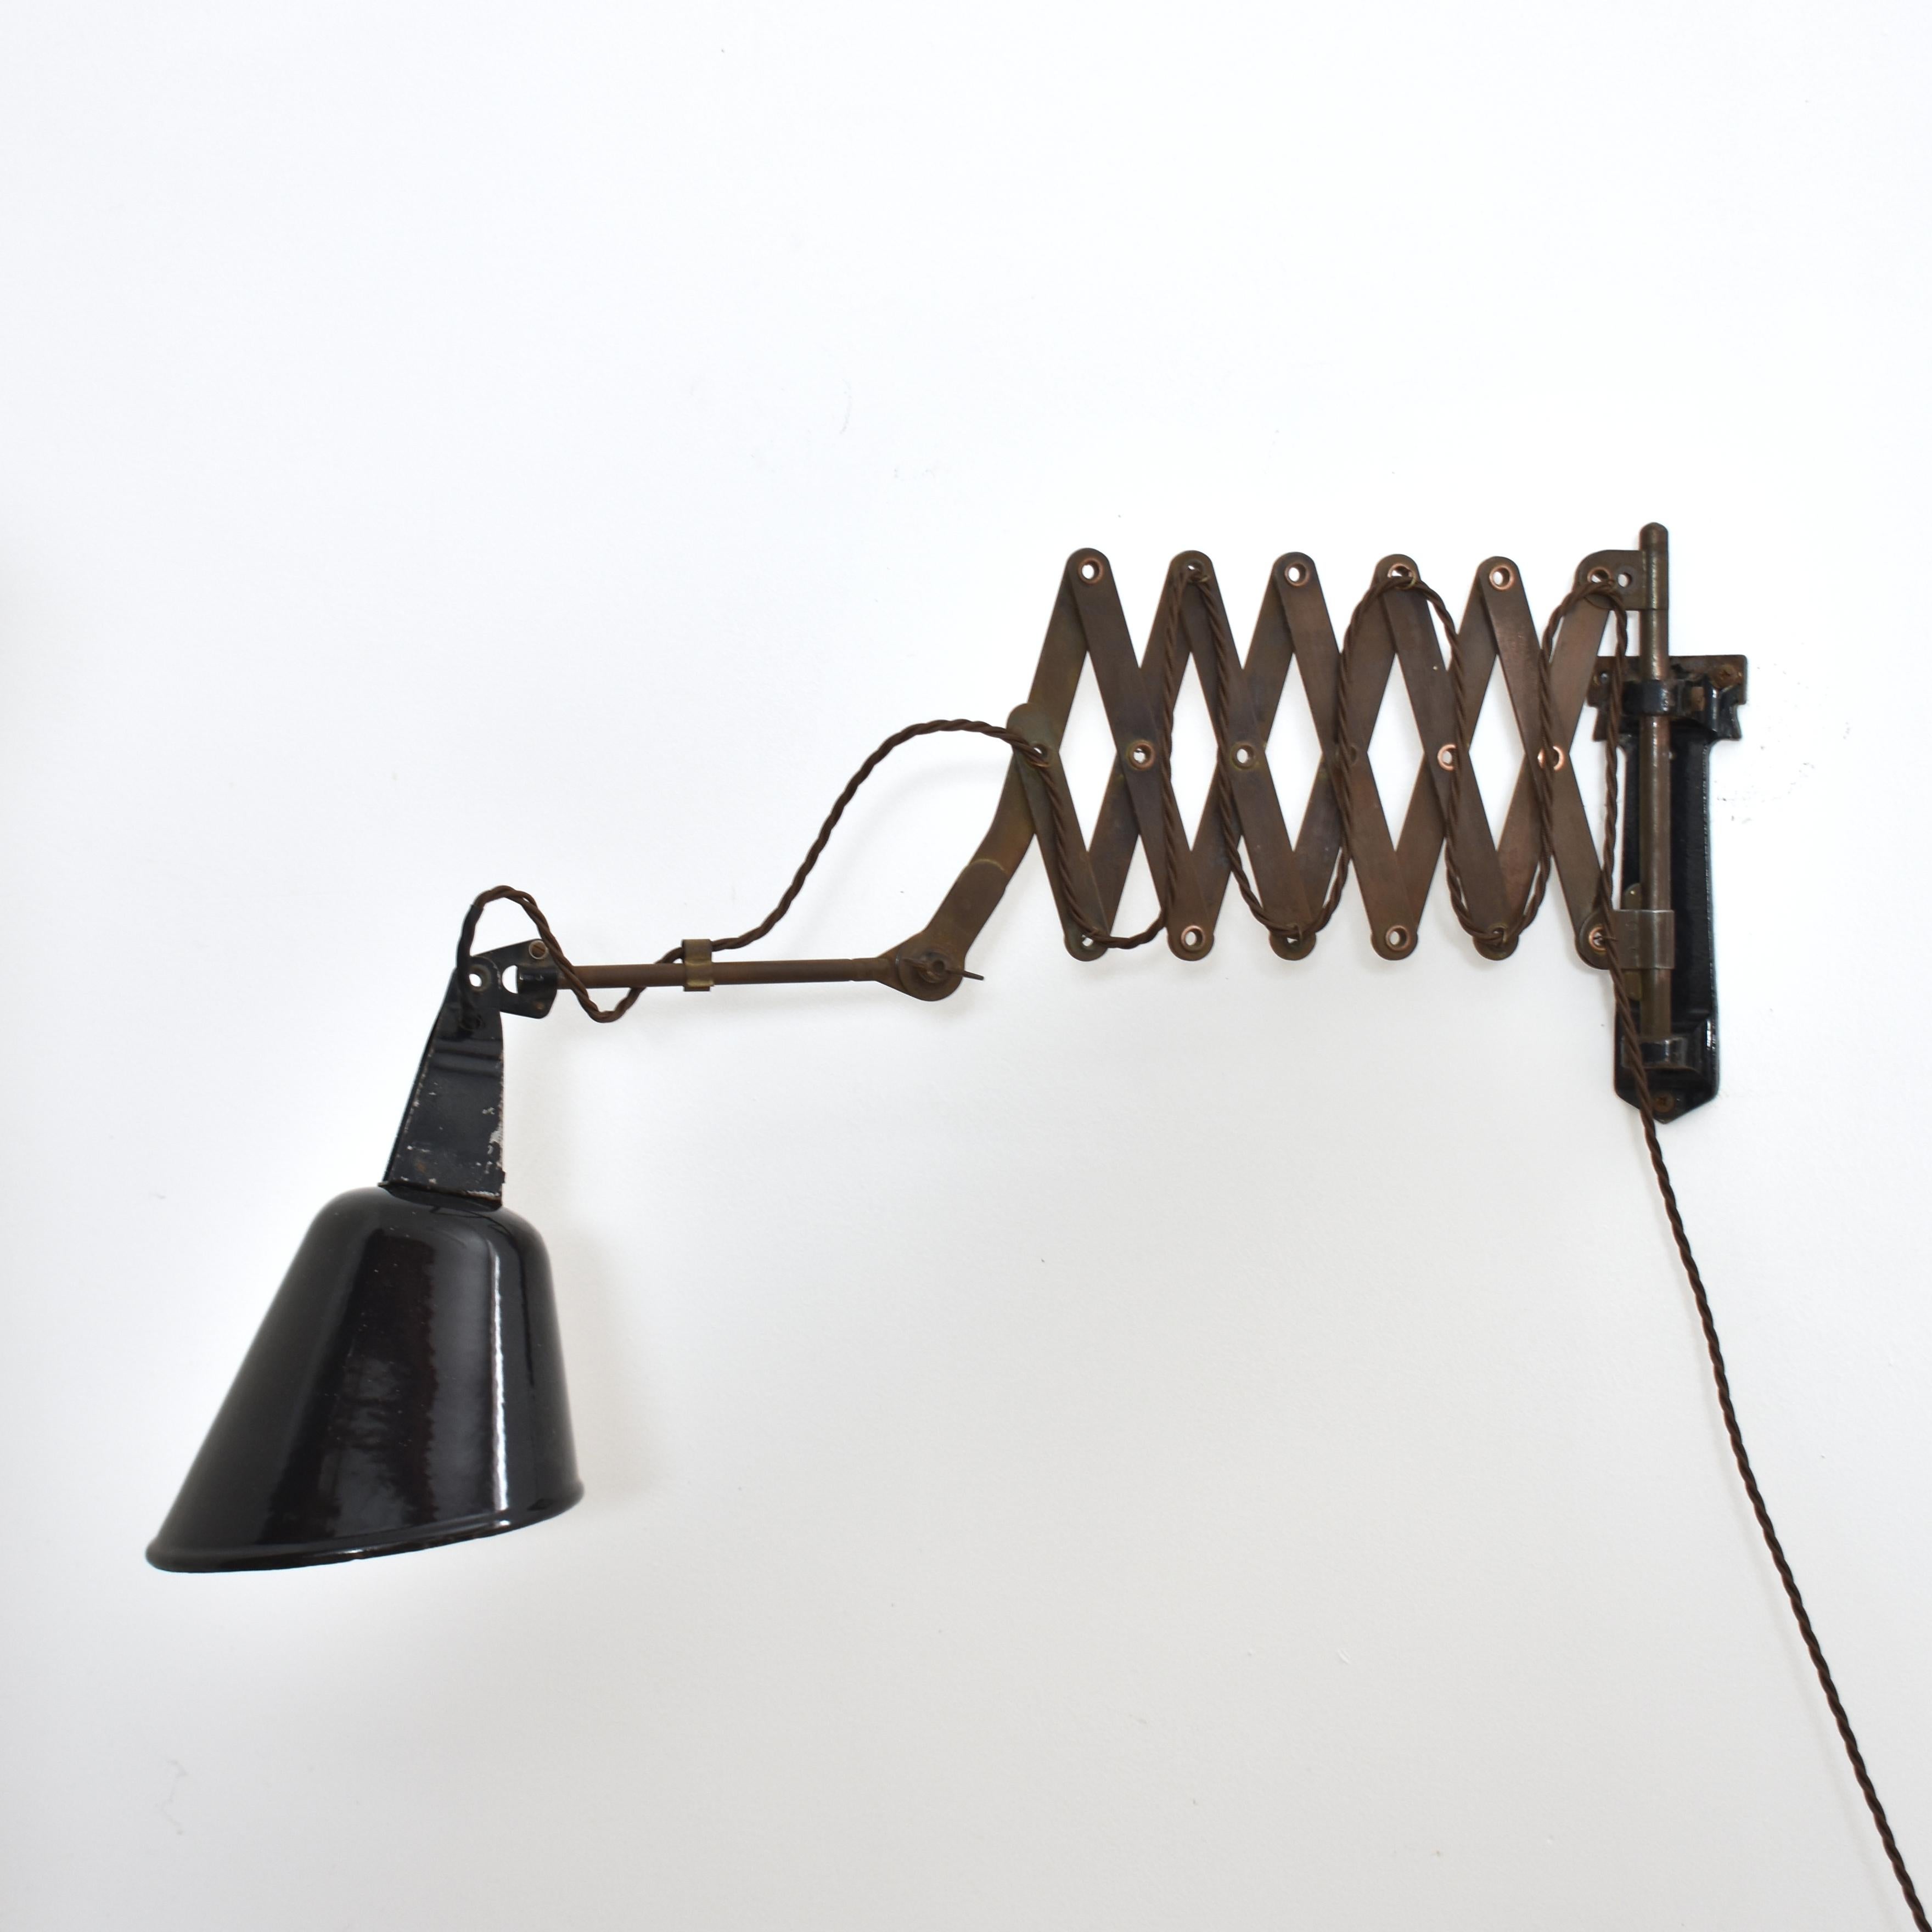 Radialite Vintage Scheren-Wandleuchte von Walligraph

Eine Scherenwandleuchte im Vintage-Stil mit einem schwarzen Aluminiumschirm. Die Leuchte hat einen Doppelscherenmechanismus aus Stahl, der aus- und einfahren kann. Die Position des Schirms kann